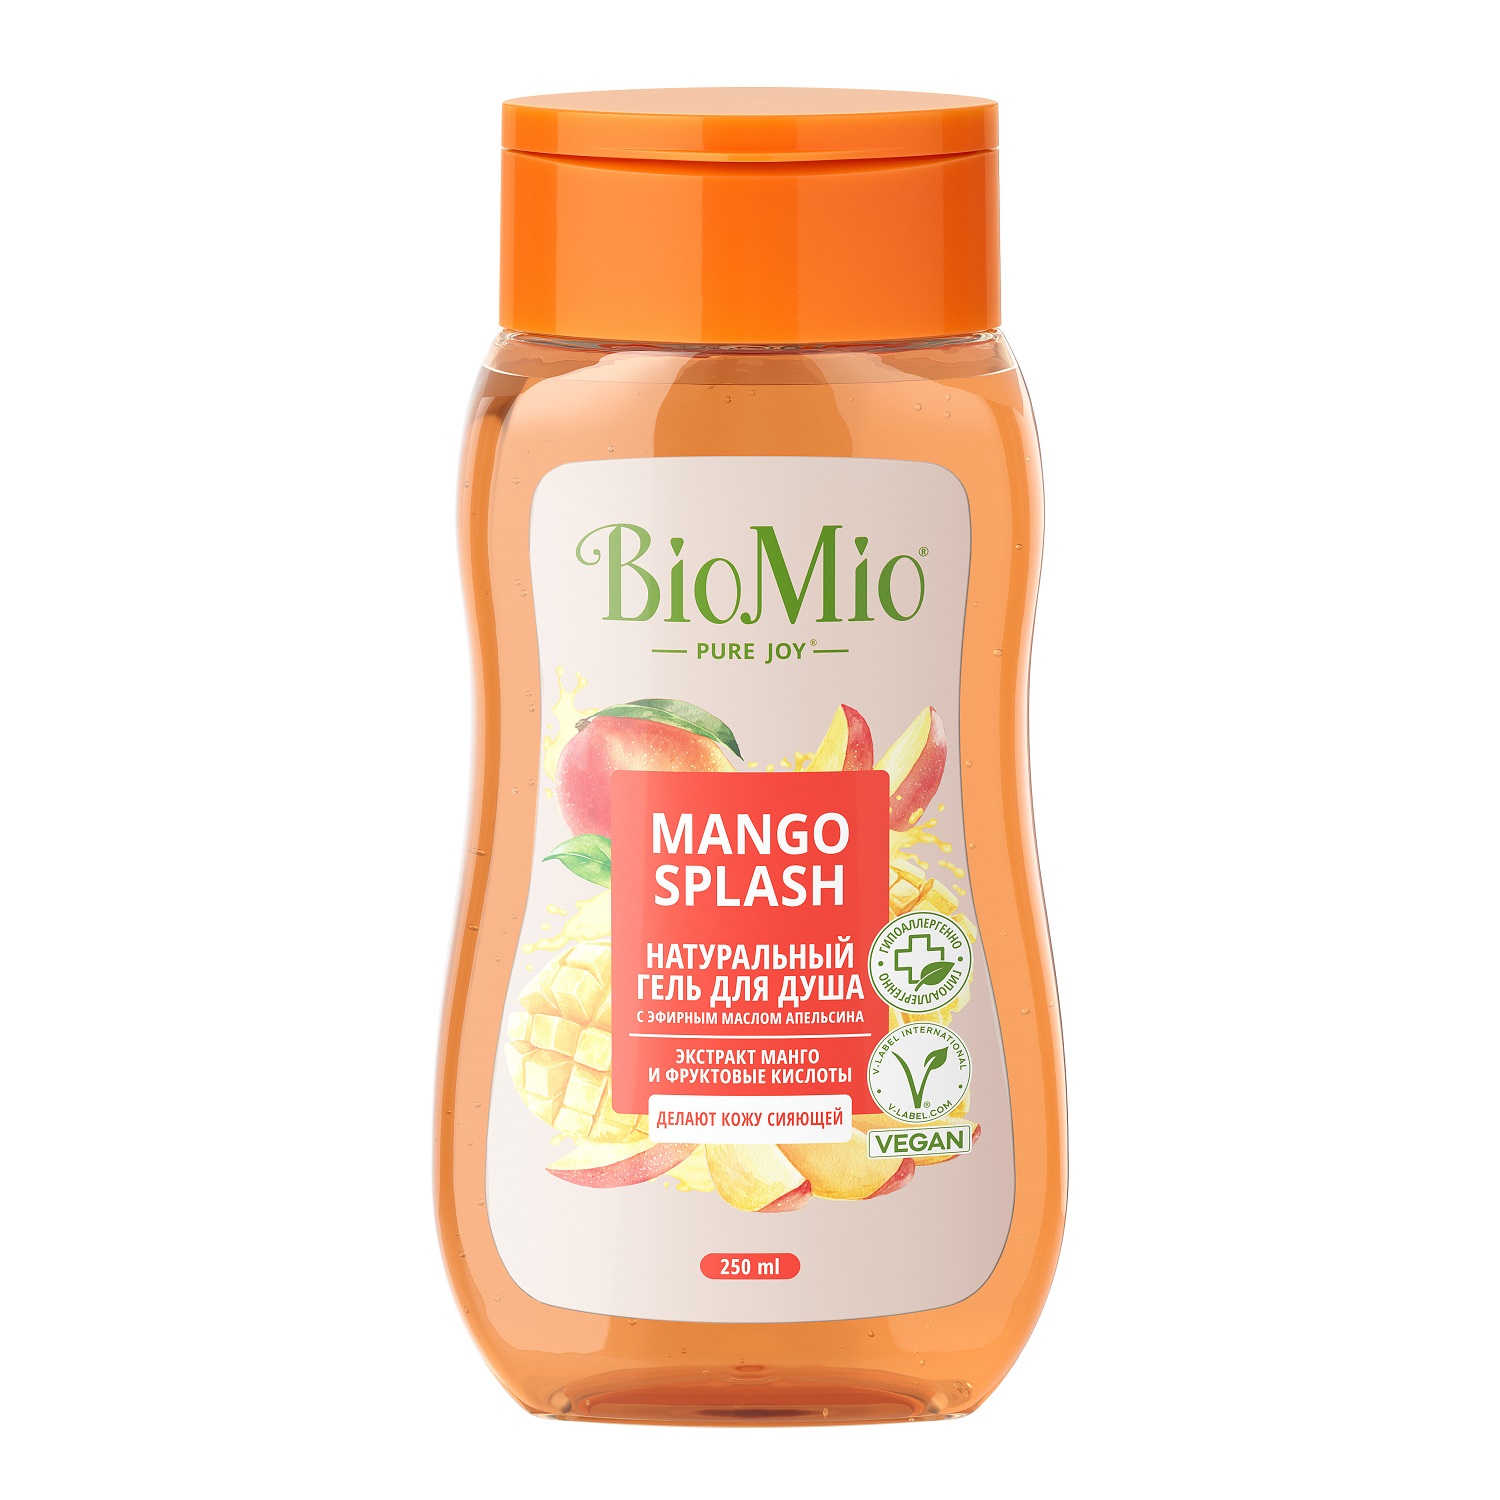 BioMio Гель для душа с экстрактом манго Mango Splash, 250 мл (BioMio, Для ванны и душа) гель для душа biomio манго 250 мл